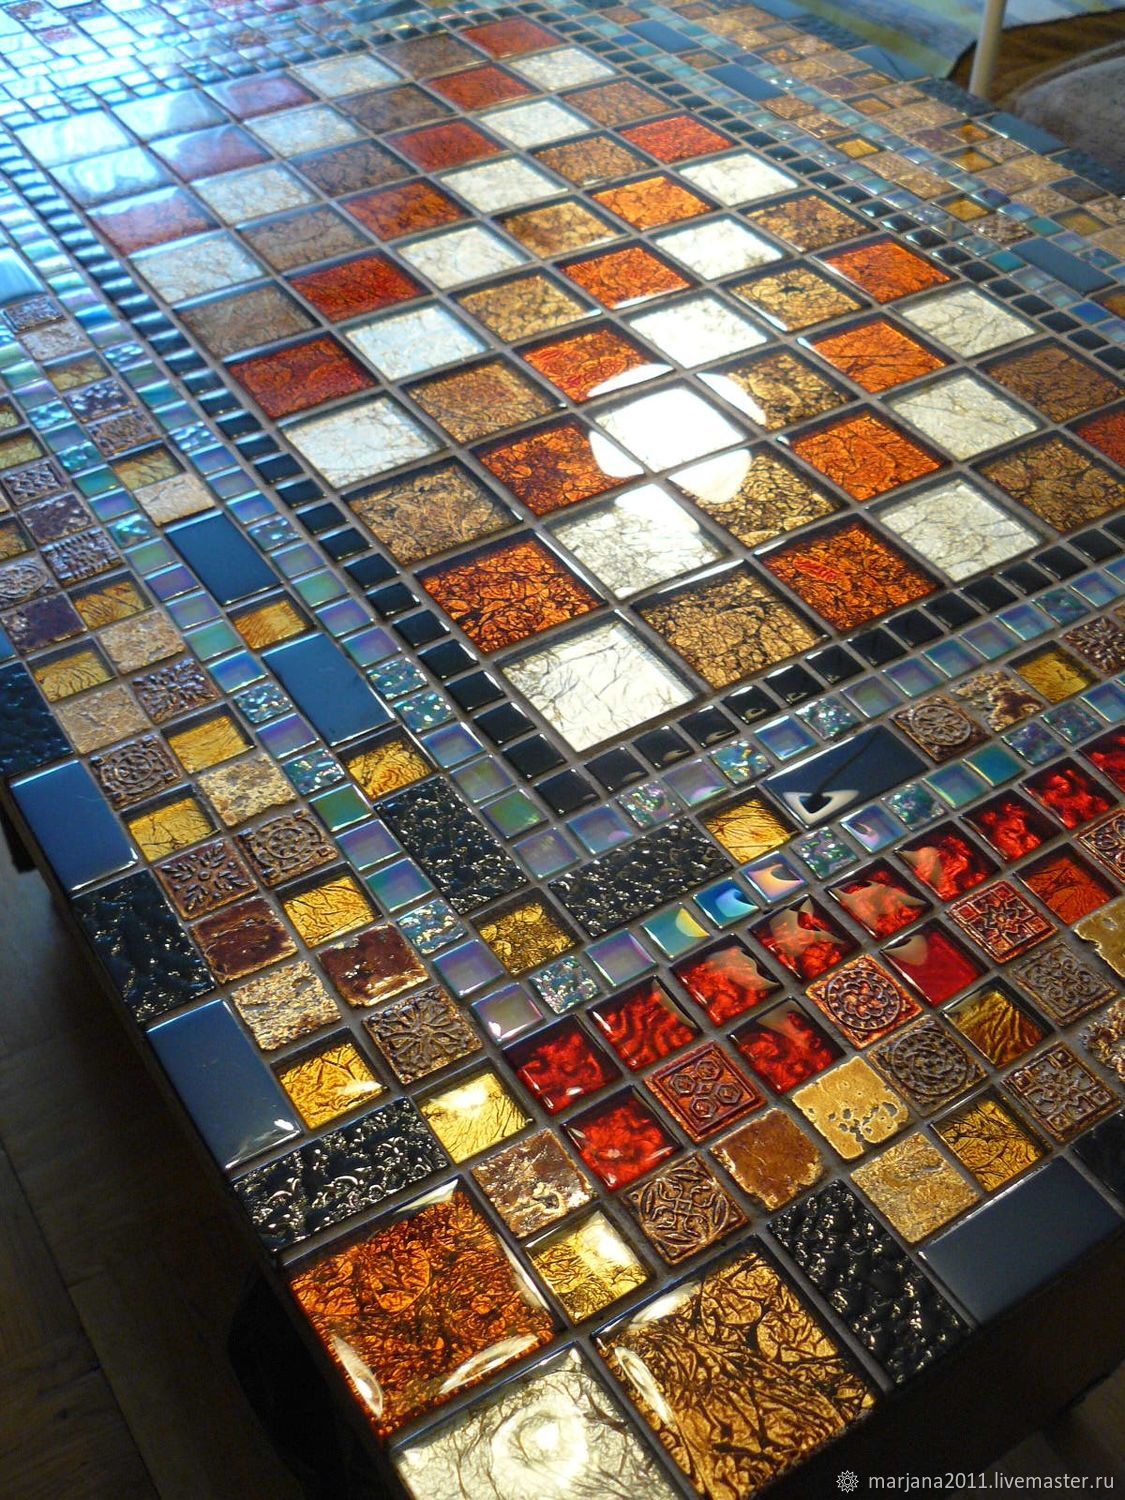 Декор стола мозаичной плиткой